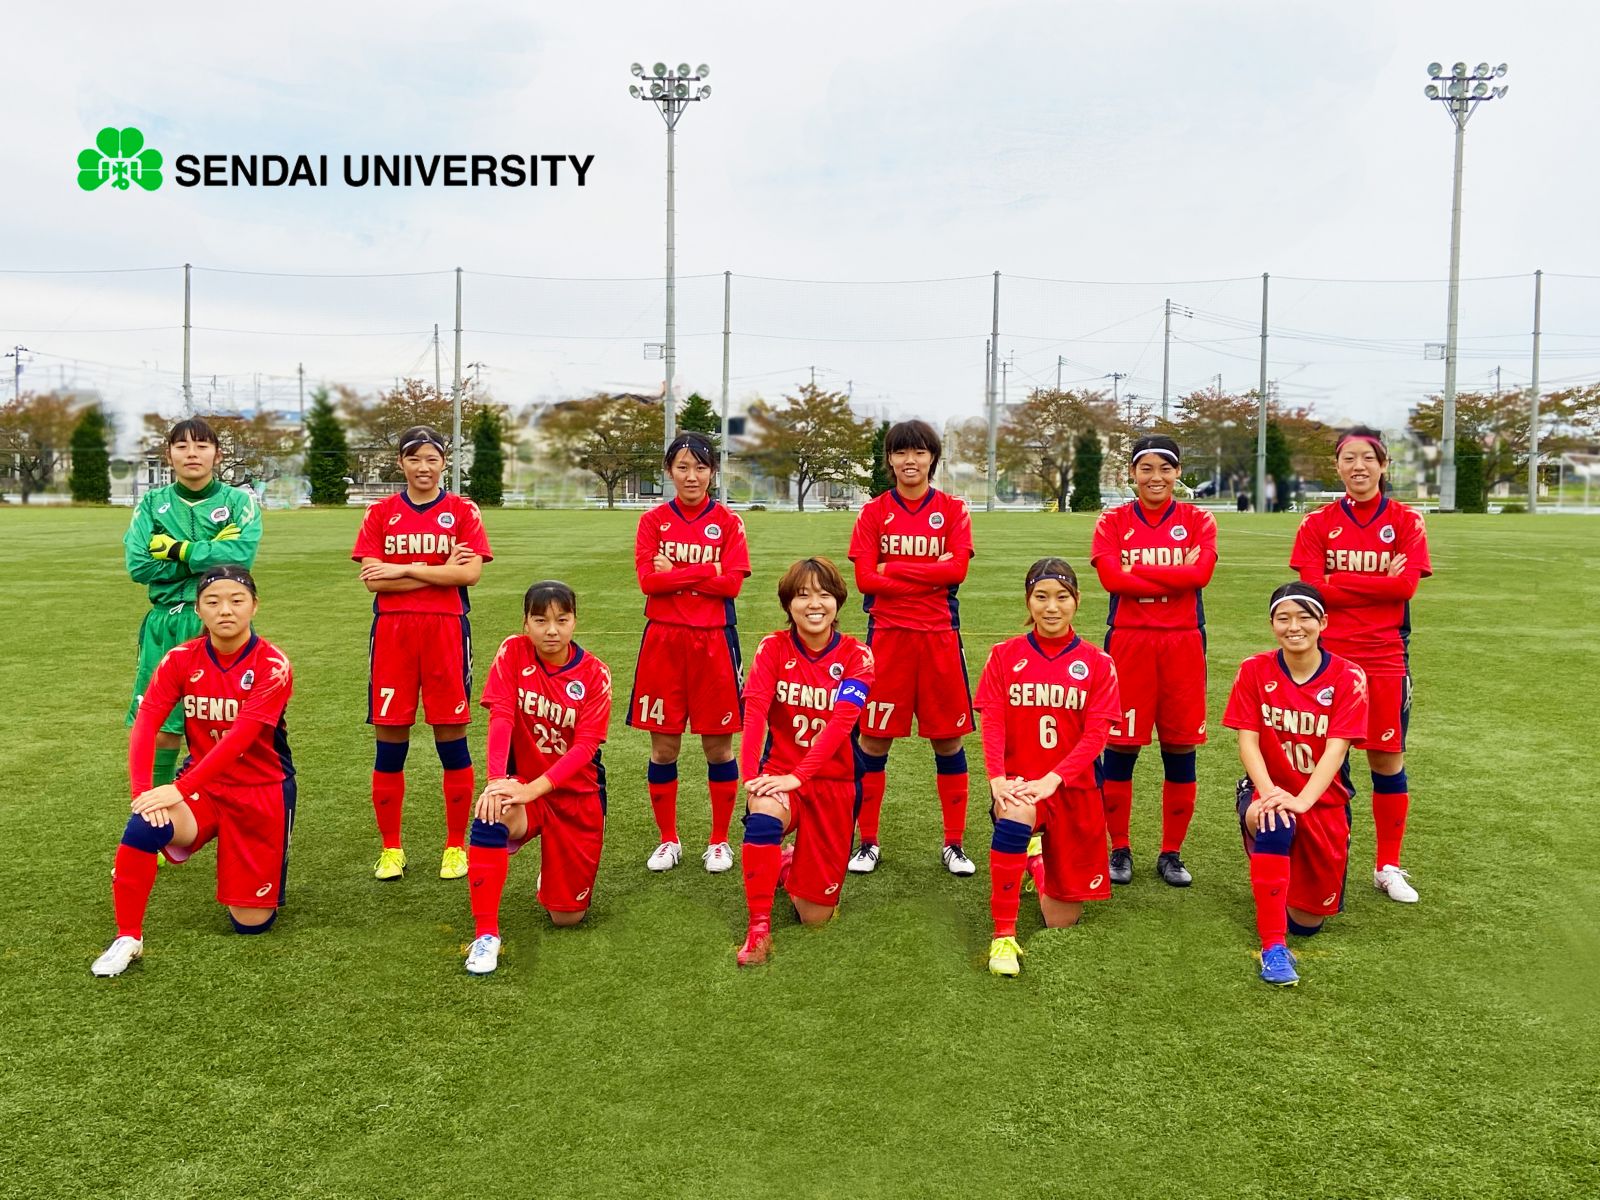 女子サッカー部 年度東北地域大学女子サッカーリーグ 優勝決定 トピックス 仙スポ 仙台大学スポーツサイト